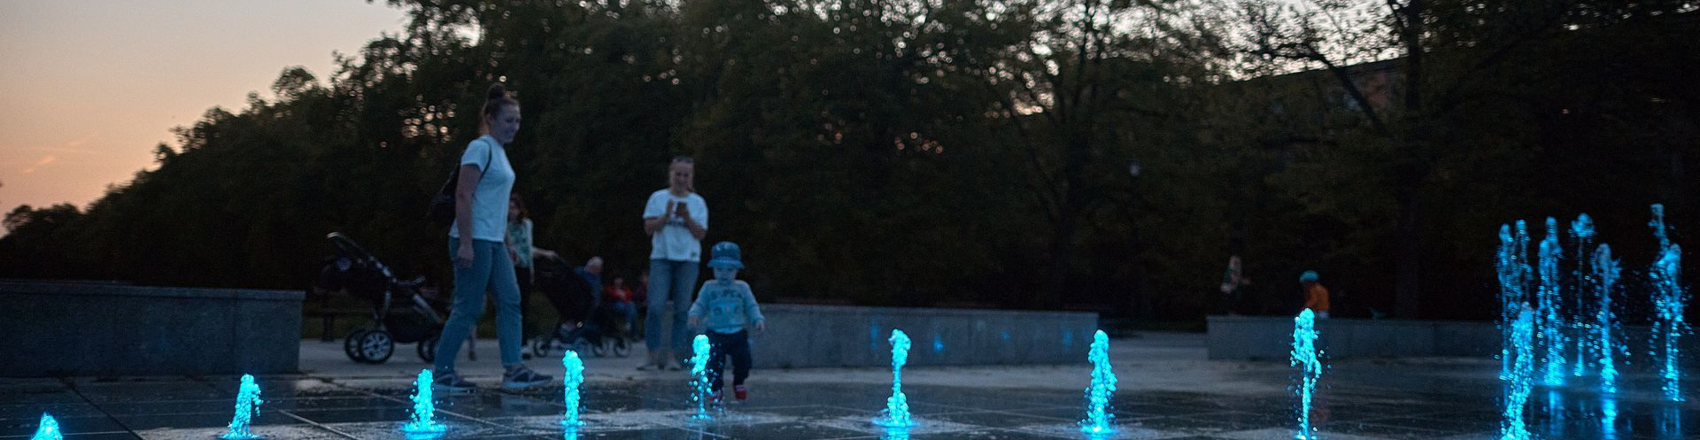  , Fontanny multimedialne w Parku Poniatowskiego świecące na niebiesko podczas zachodu słońca